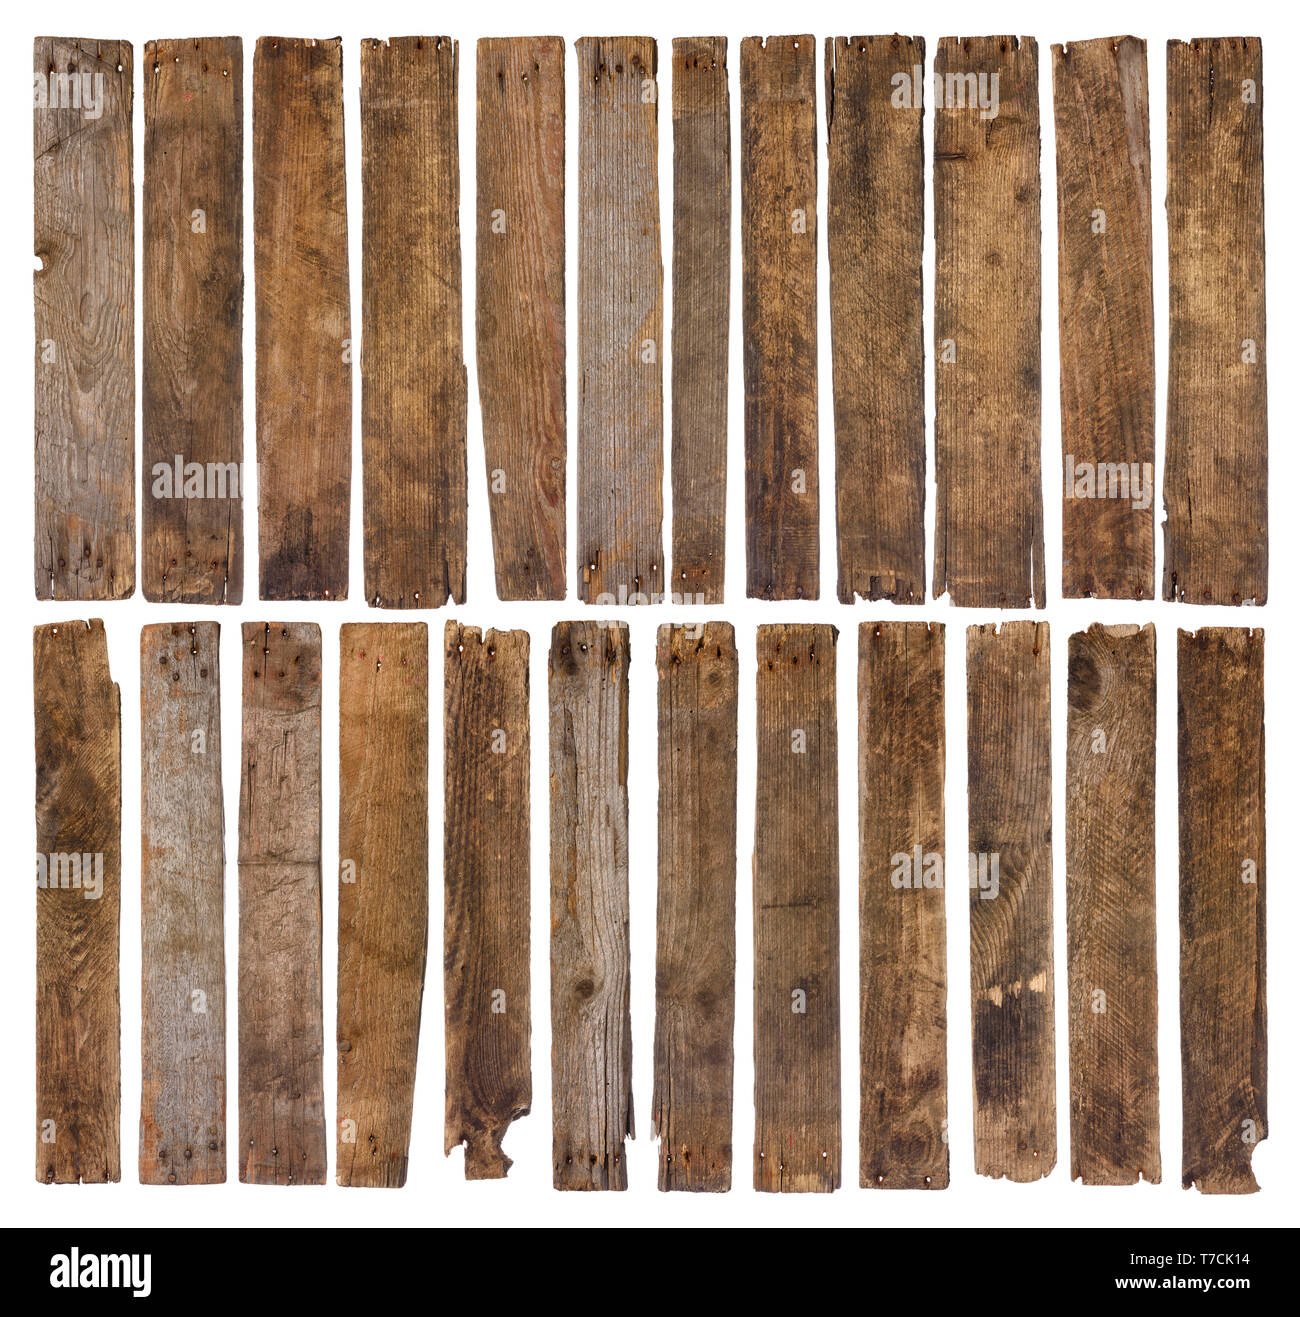 Old Wooden planks isolé sur fond blanc. Jeu de 24 court unique planche en bois patiné rustique, forte et très détaillée pour la conception. Banque D'Images